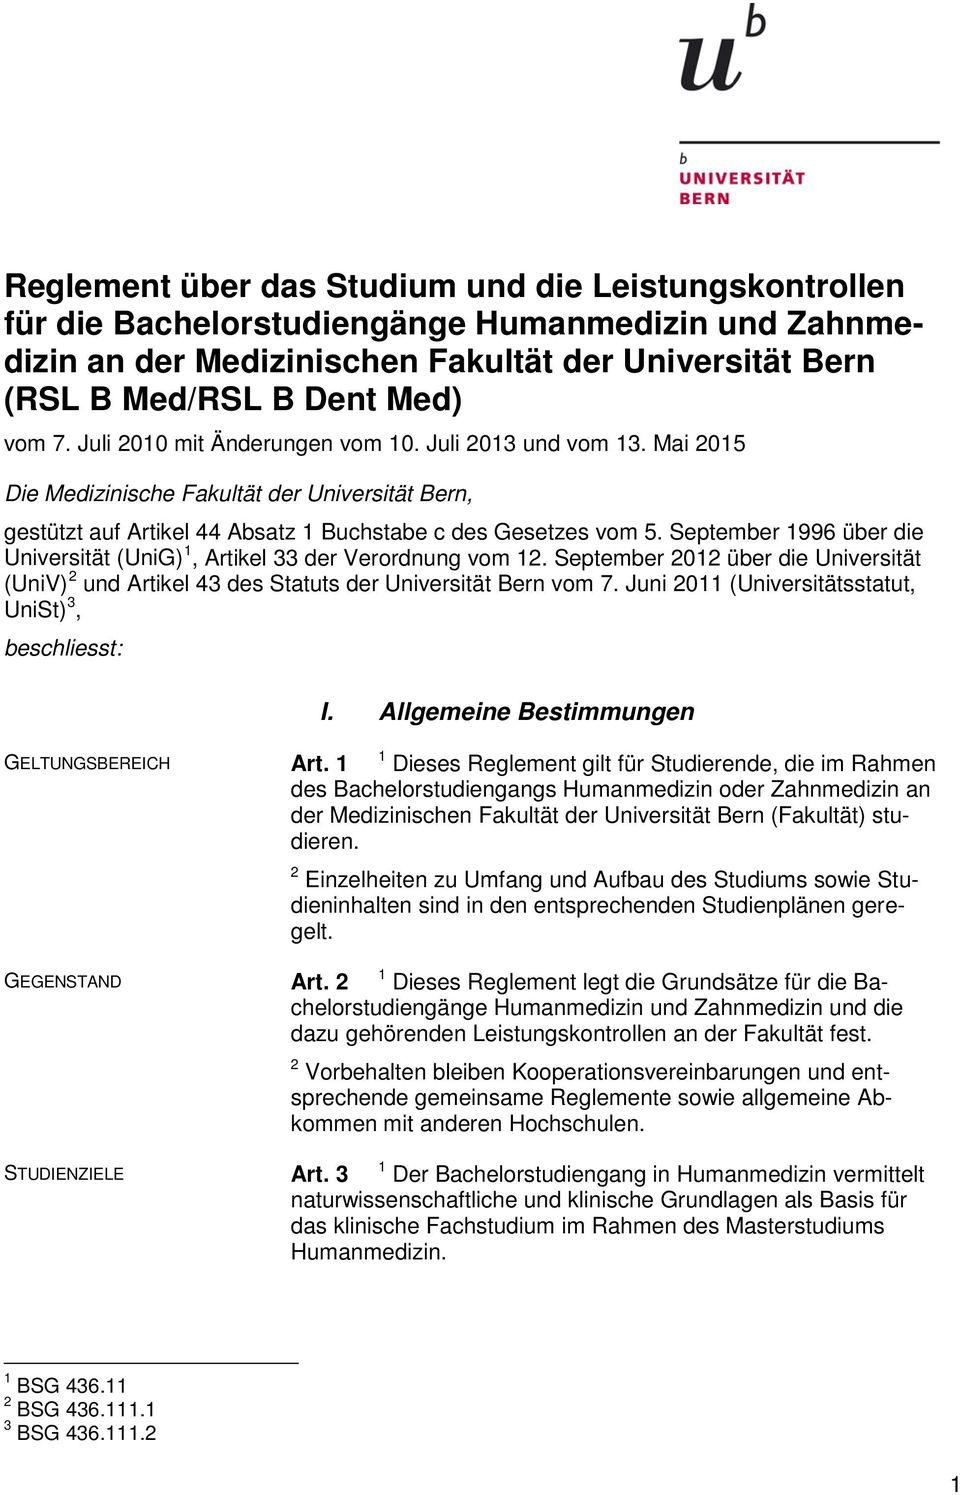 September 1996 über die Universität (UniG) 1, Artikel 33 der Verordnung vom 12. September 2012 über die Universität (UniV) 2 und Artikel 43 des Statuts der Universität Bern vom 7.